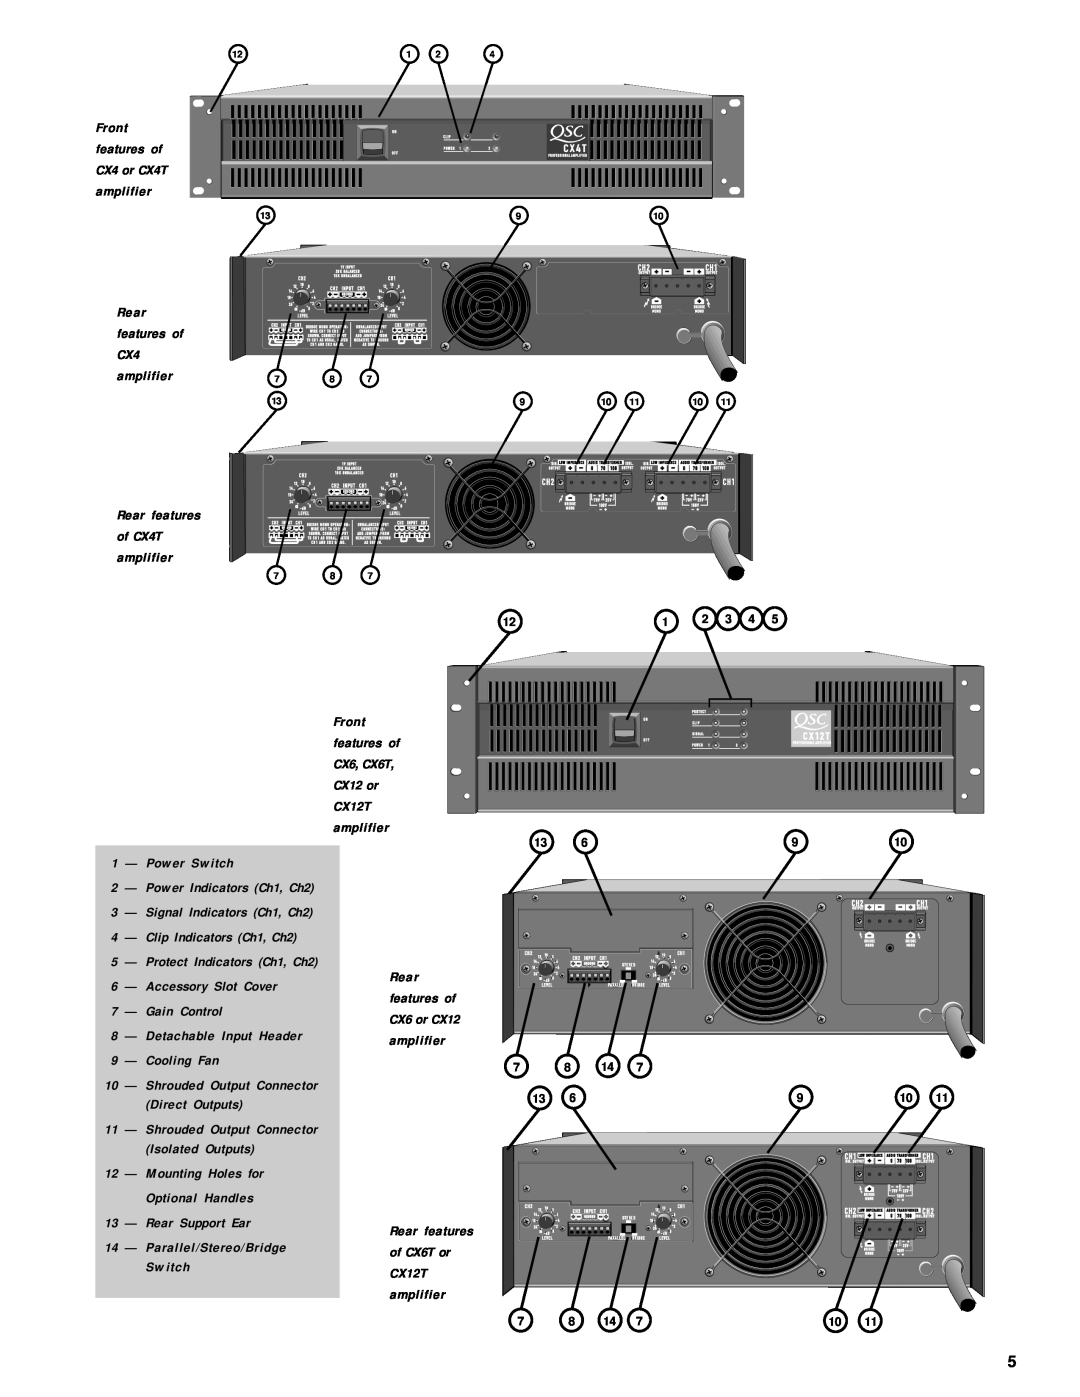 QSC Audio CX Series amplifier, Rear features, Front features of CX6, CX6T CX12 or CX12T, Clip Indicators Ch1, Ch2 